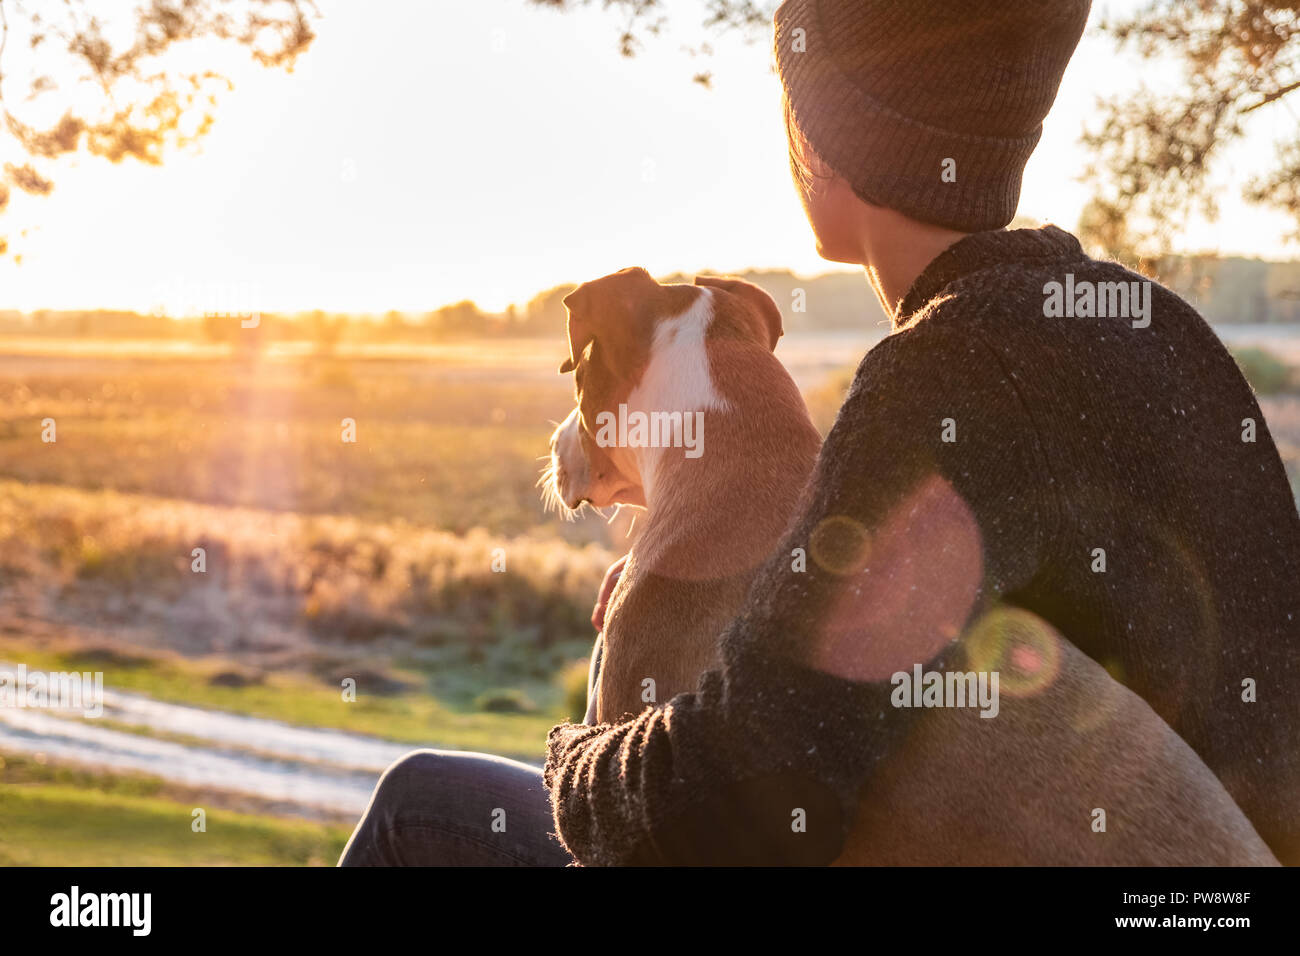 Serrant un chien dans une nature magnifique au coucher du soleil. Soleil du soir face à une femme assise avec son animal de compagnie à côté d'elle et jouit de la beauté de la nature Banque D'Images